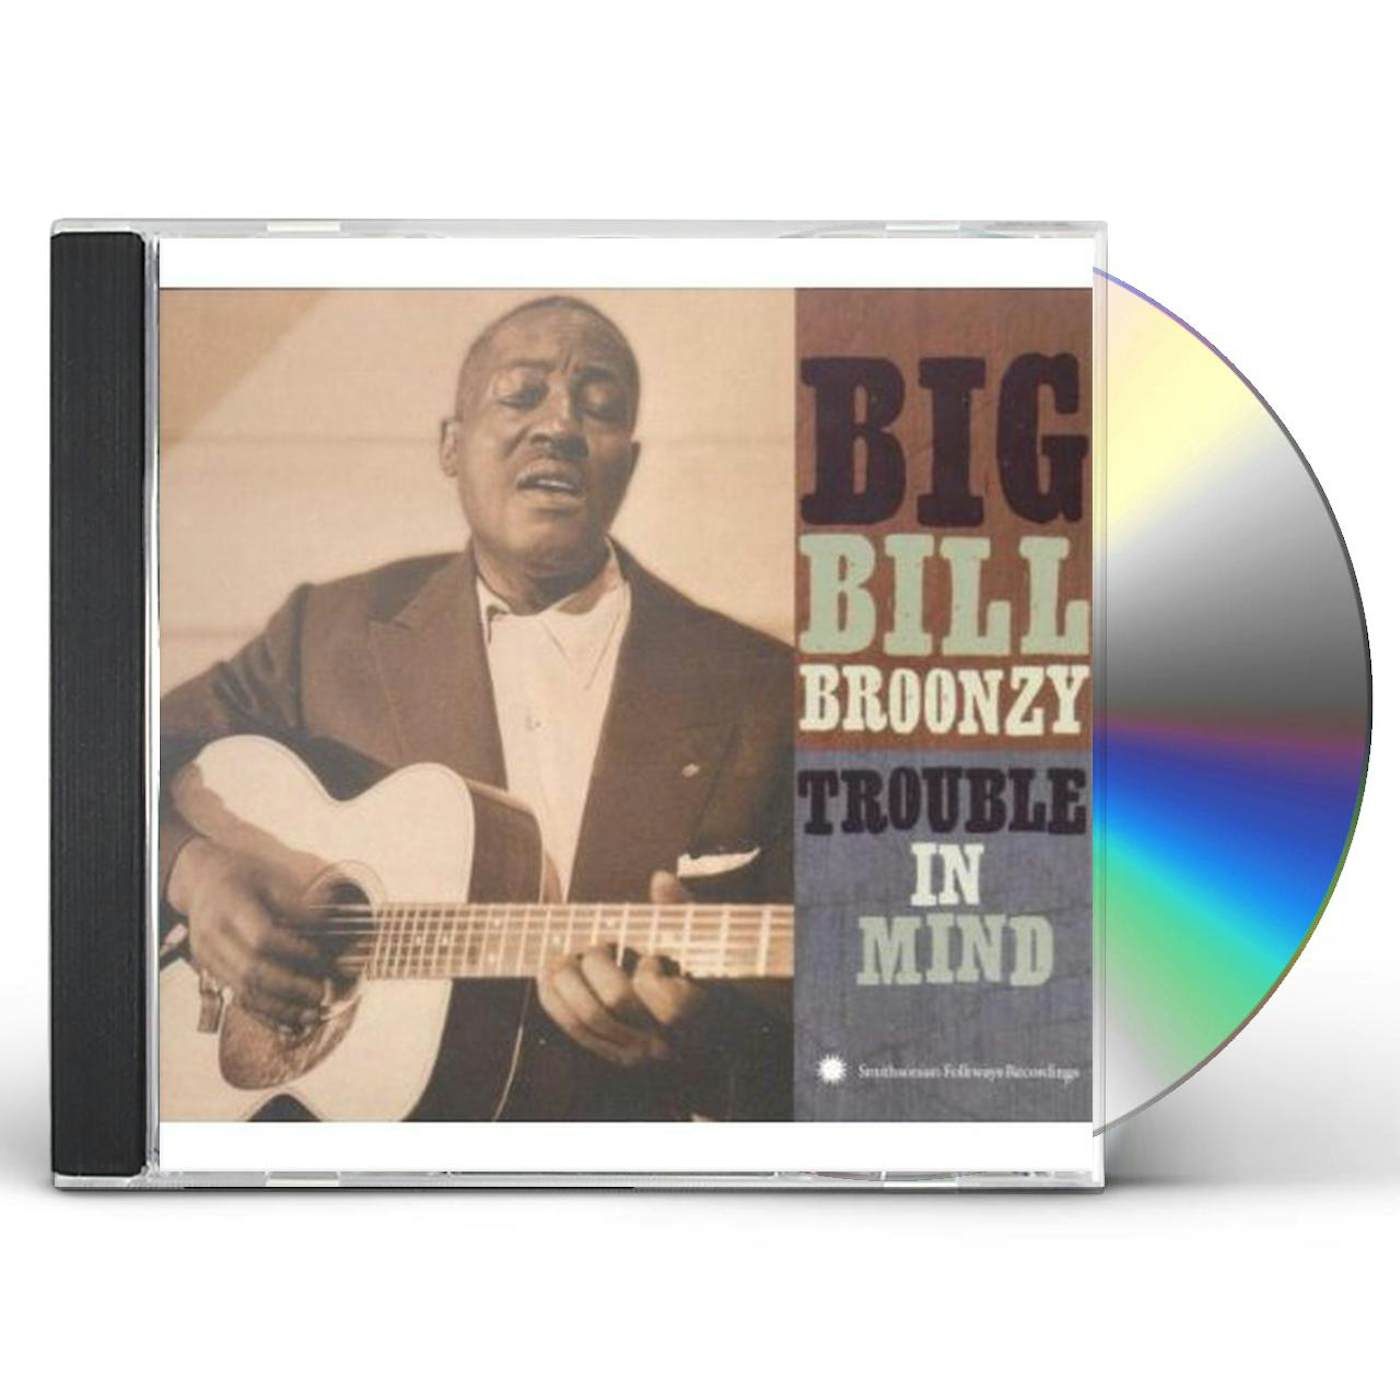 Big Bill Broonzy TROUBLE IN MIND CD